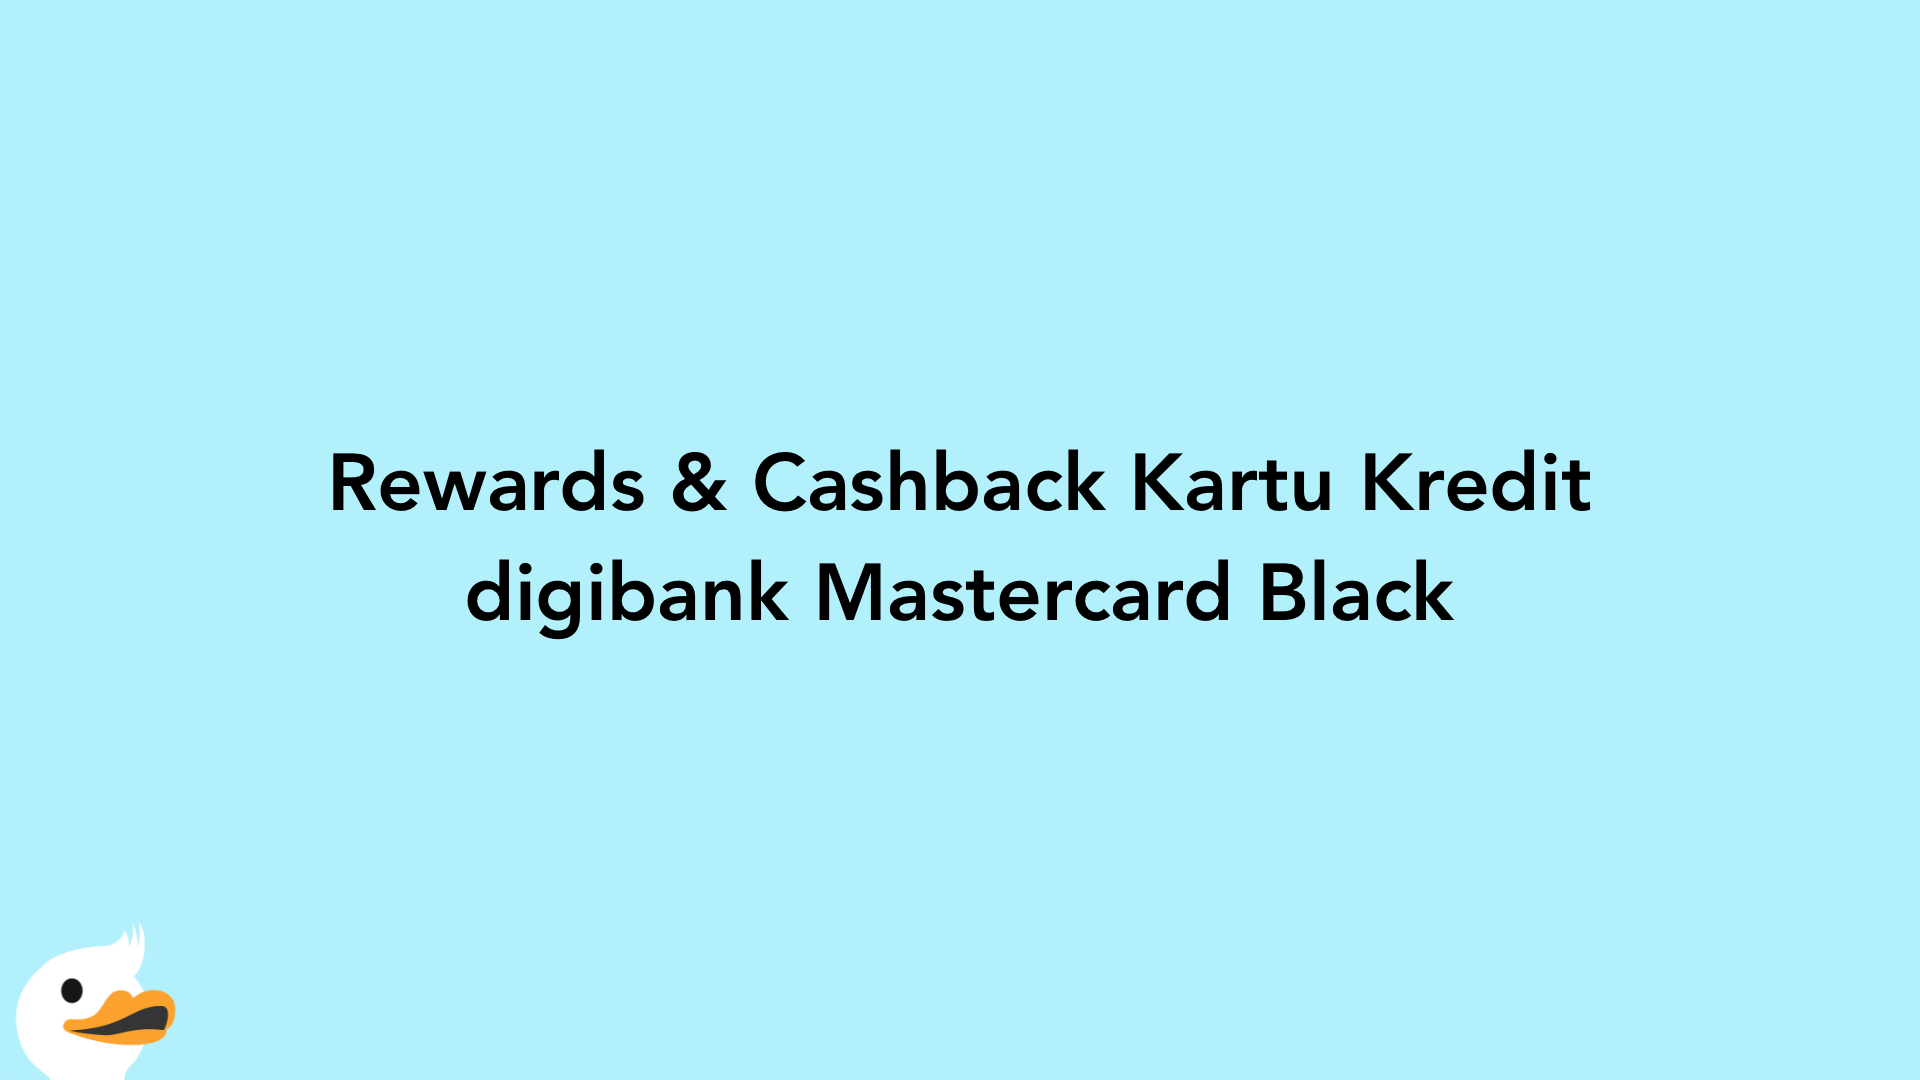 Rewards & Cashback Kartu Kredit digibank Mastercard Black